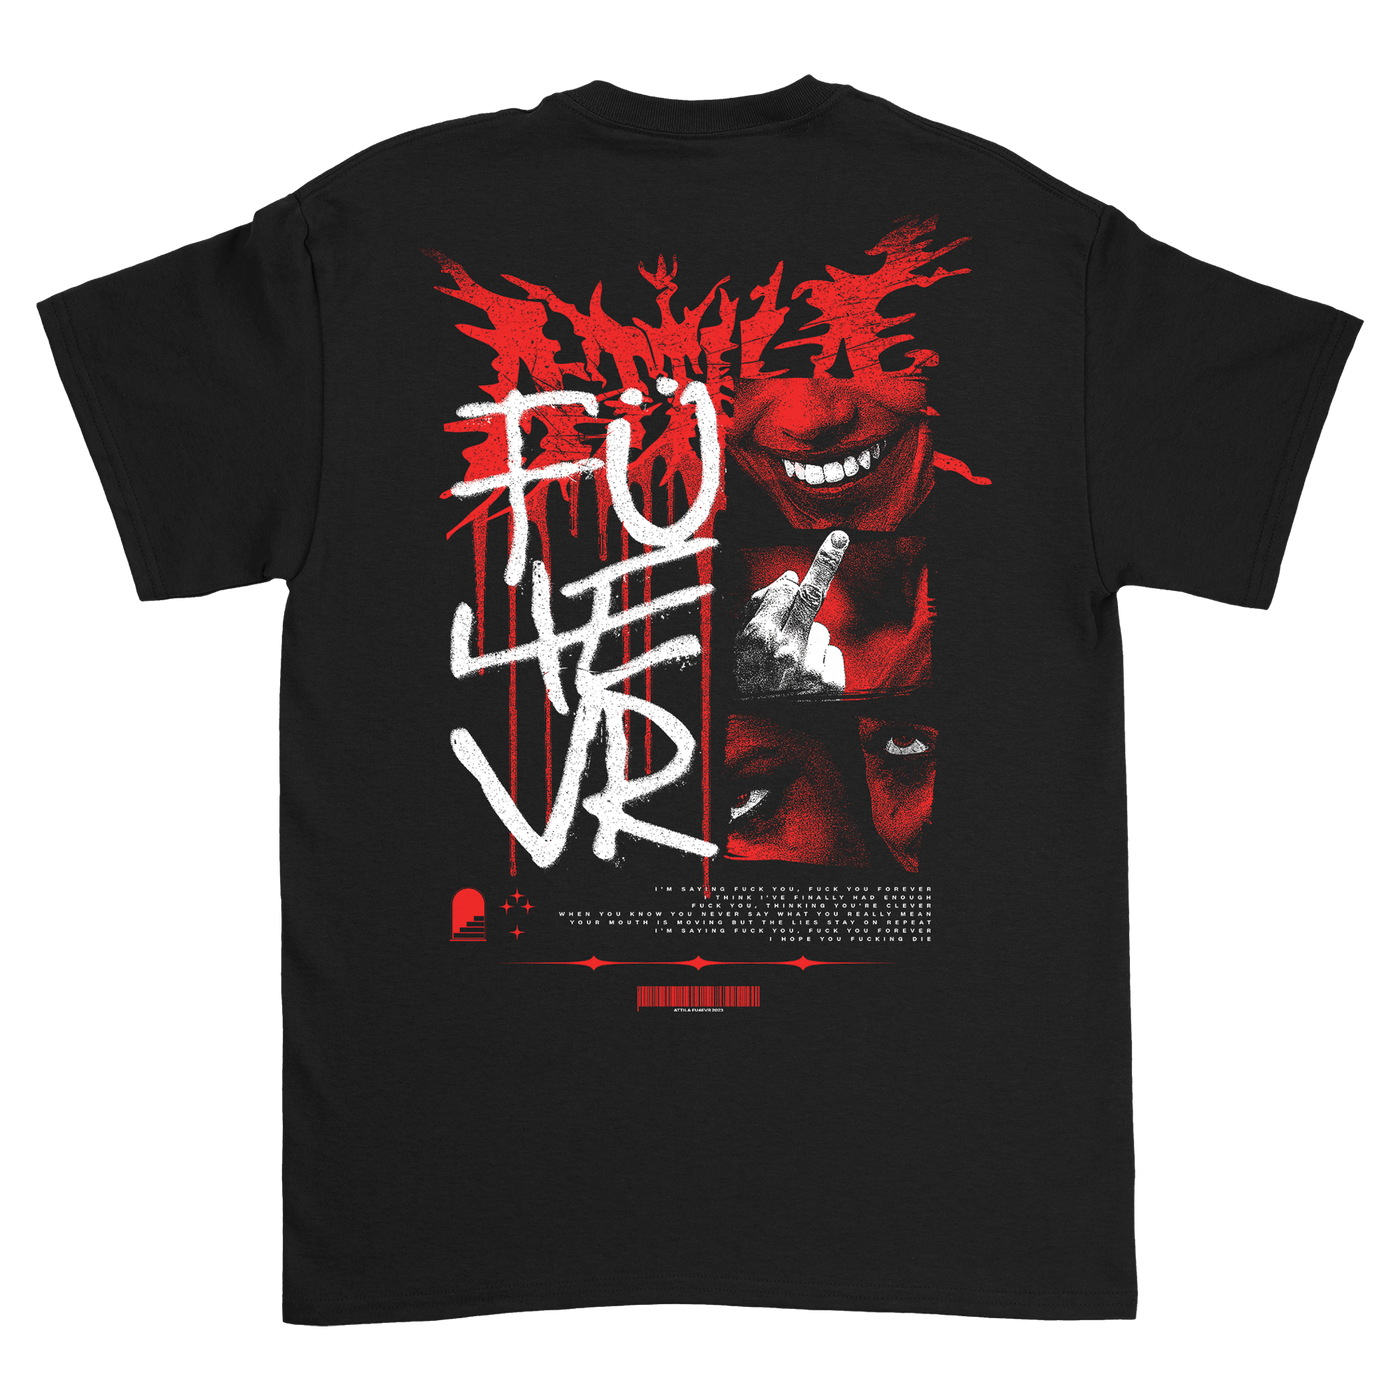 FU4EVR T-Shirt